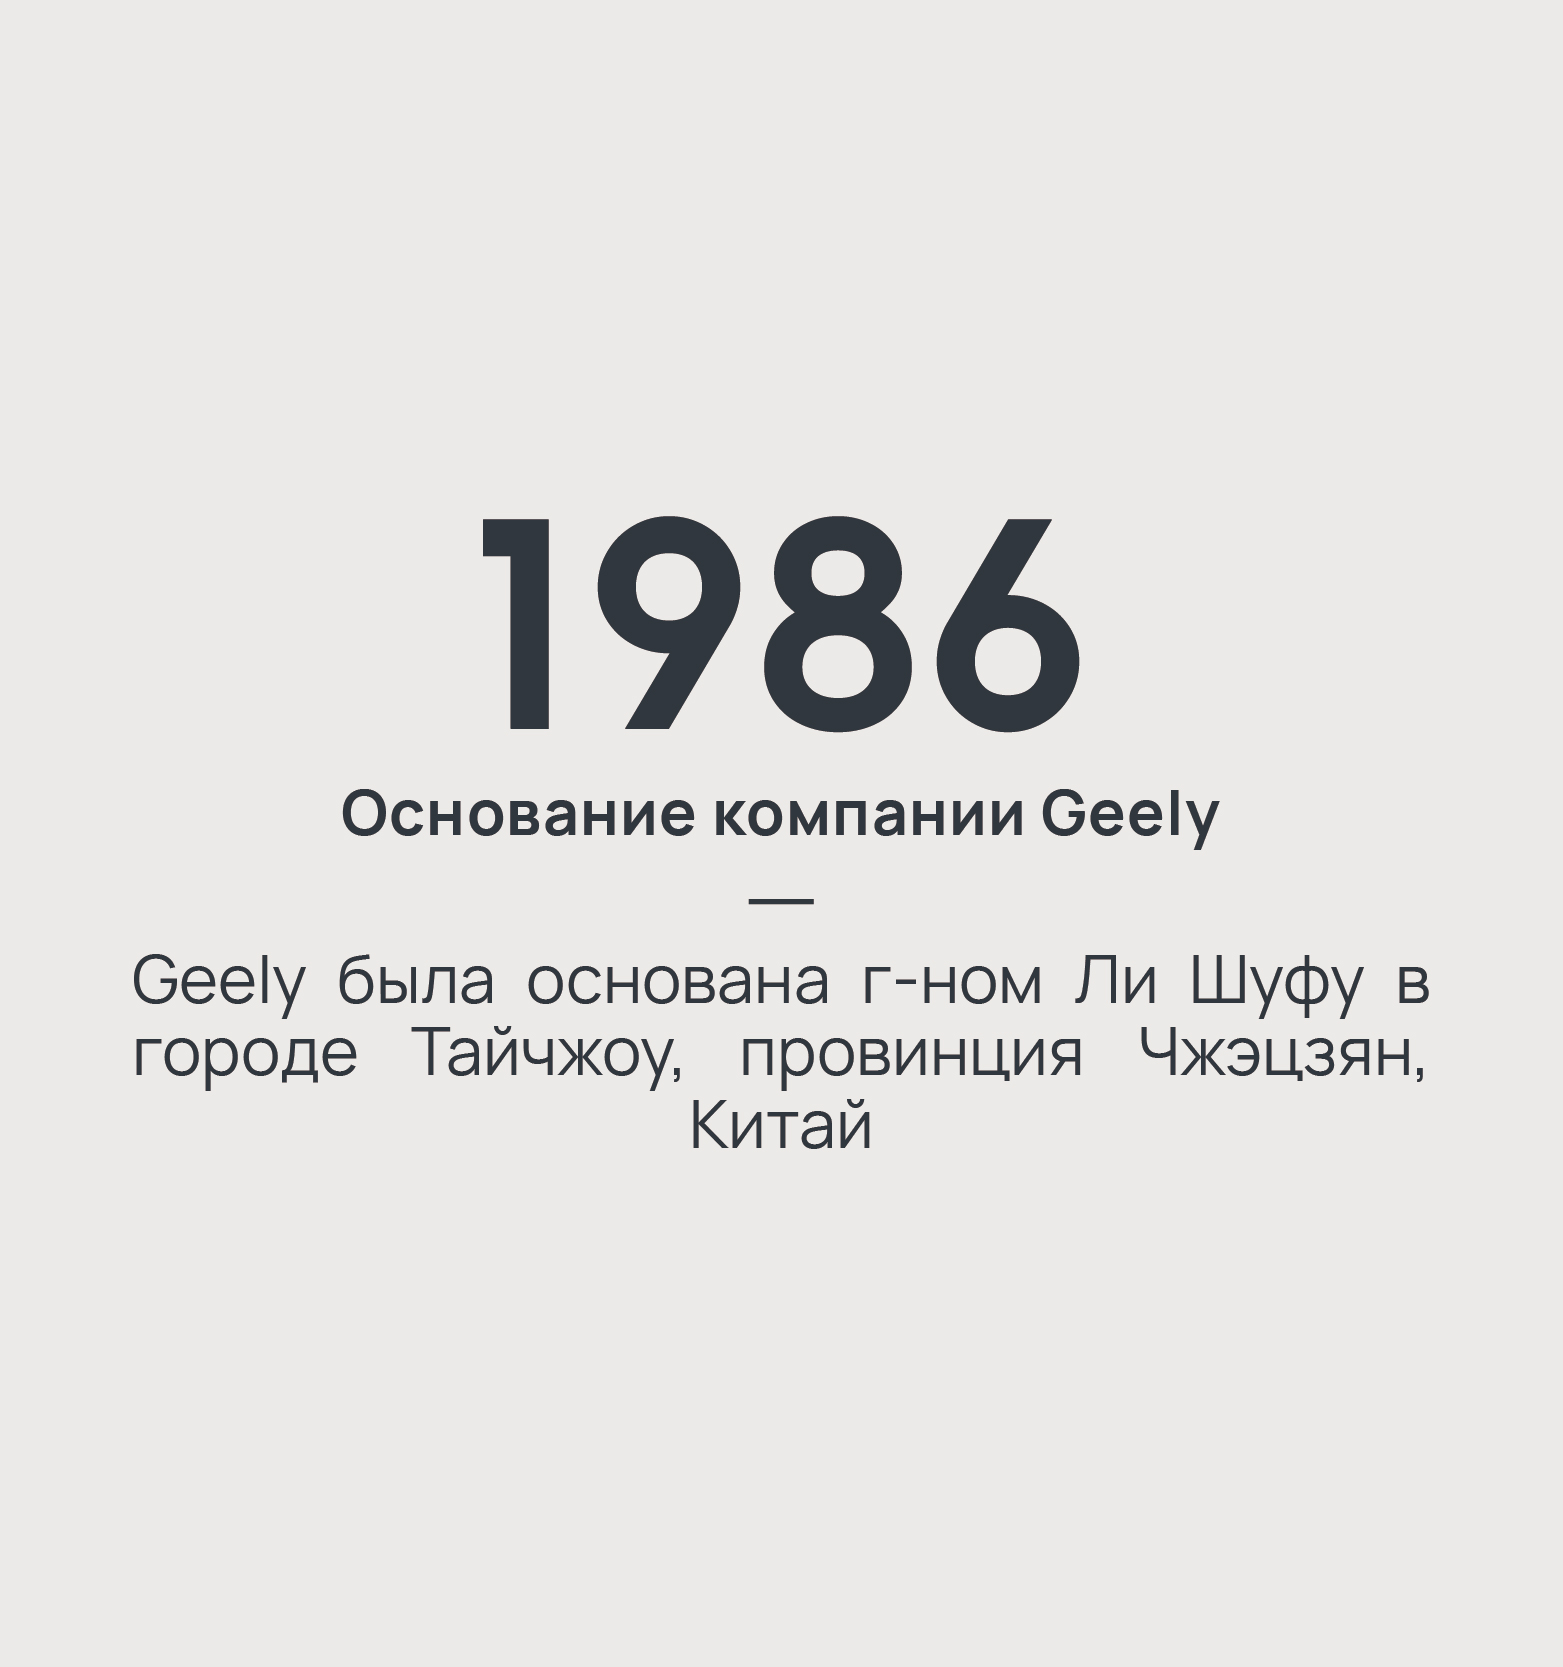 1986 год - основание компании Geely